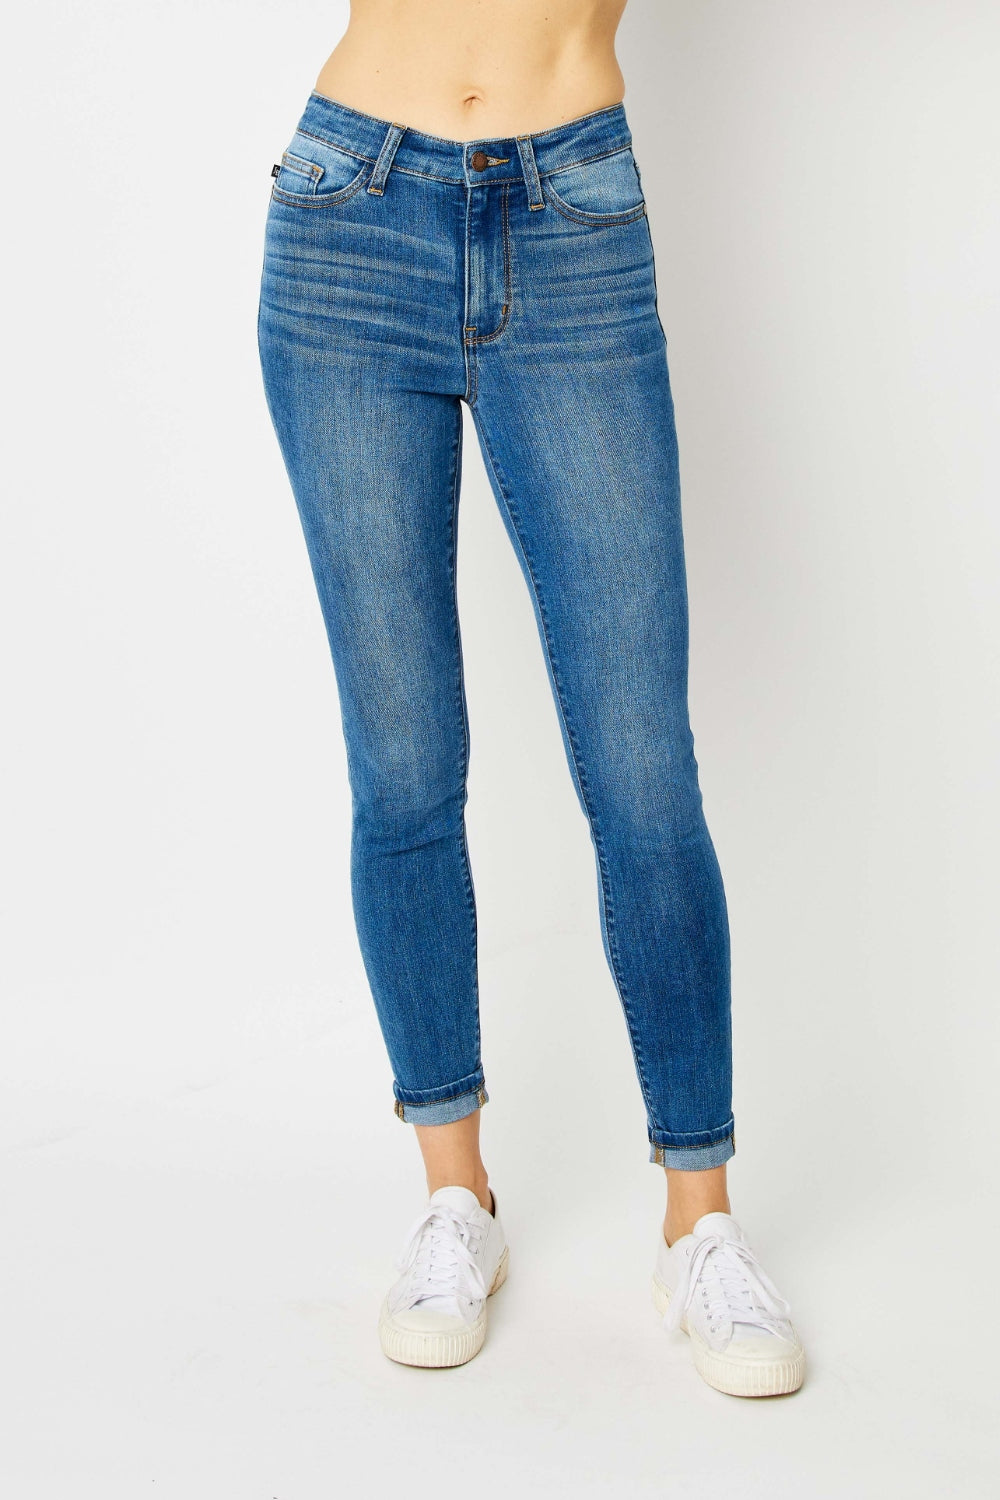 Judy Blue Full Size Cuffed Hem Skinny Jeans - Babbazon new